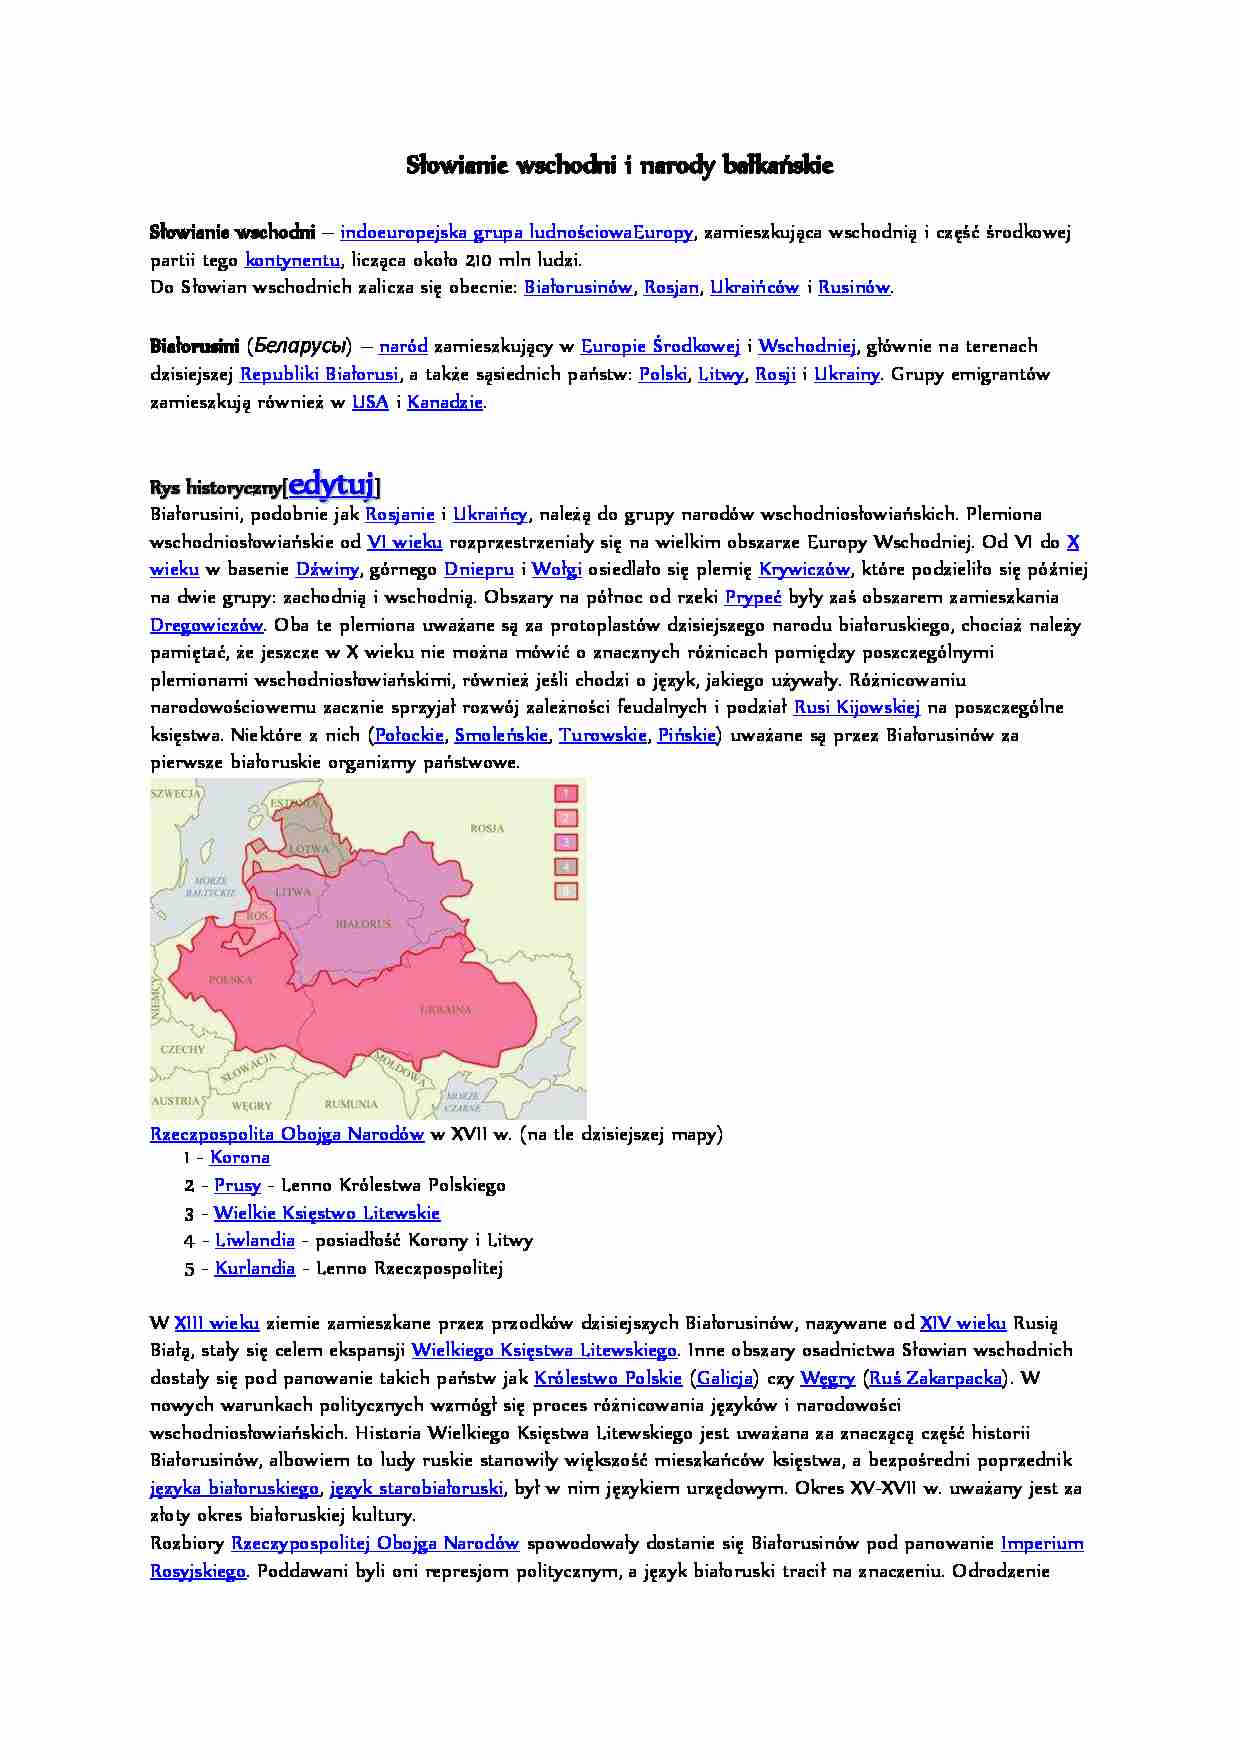 Słowianie wschodni i narody bałkańskie - strona 1